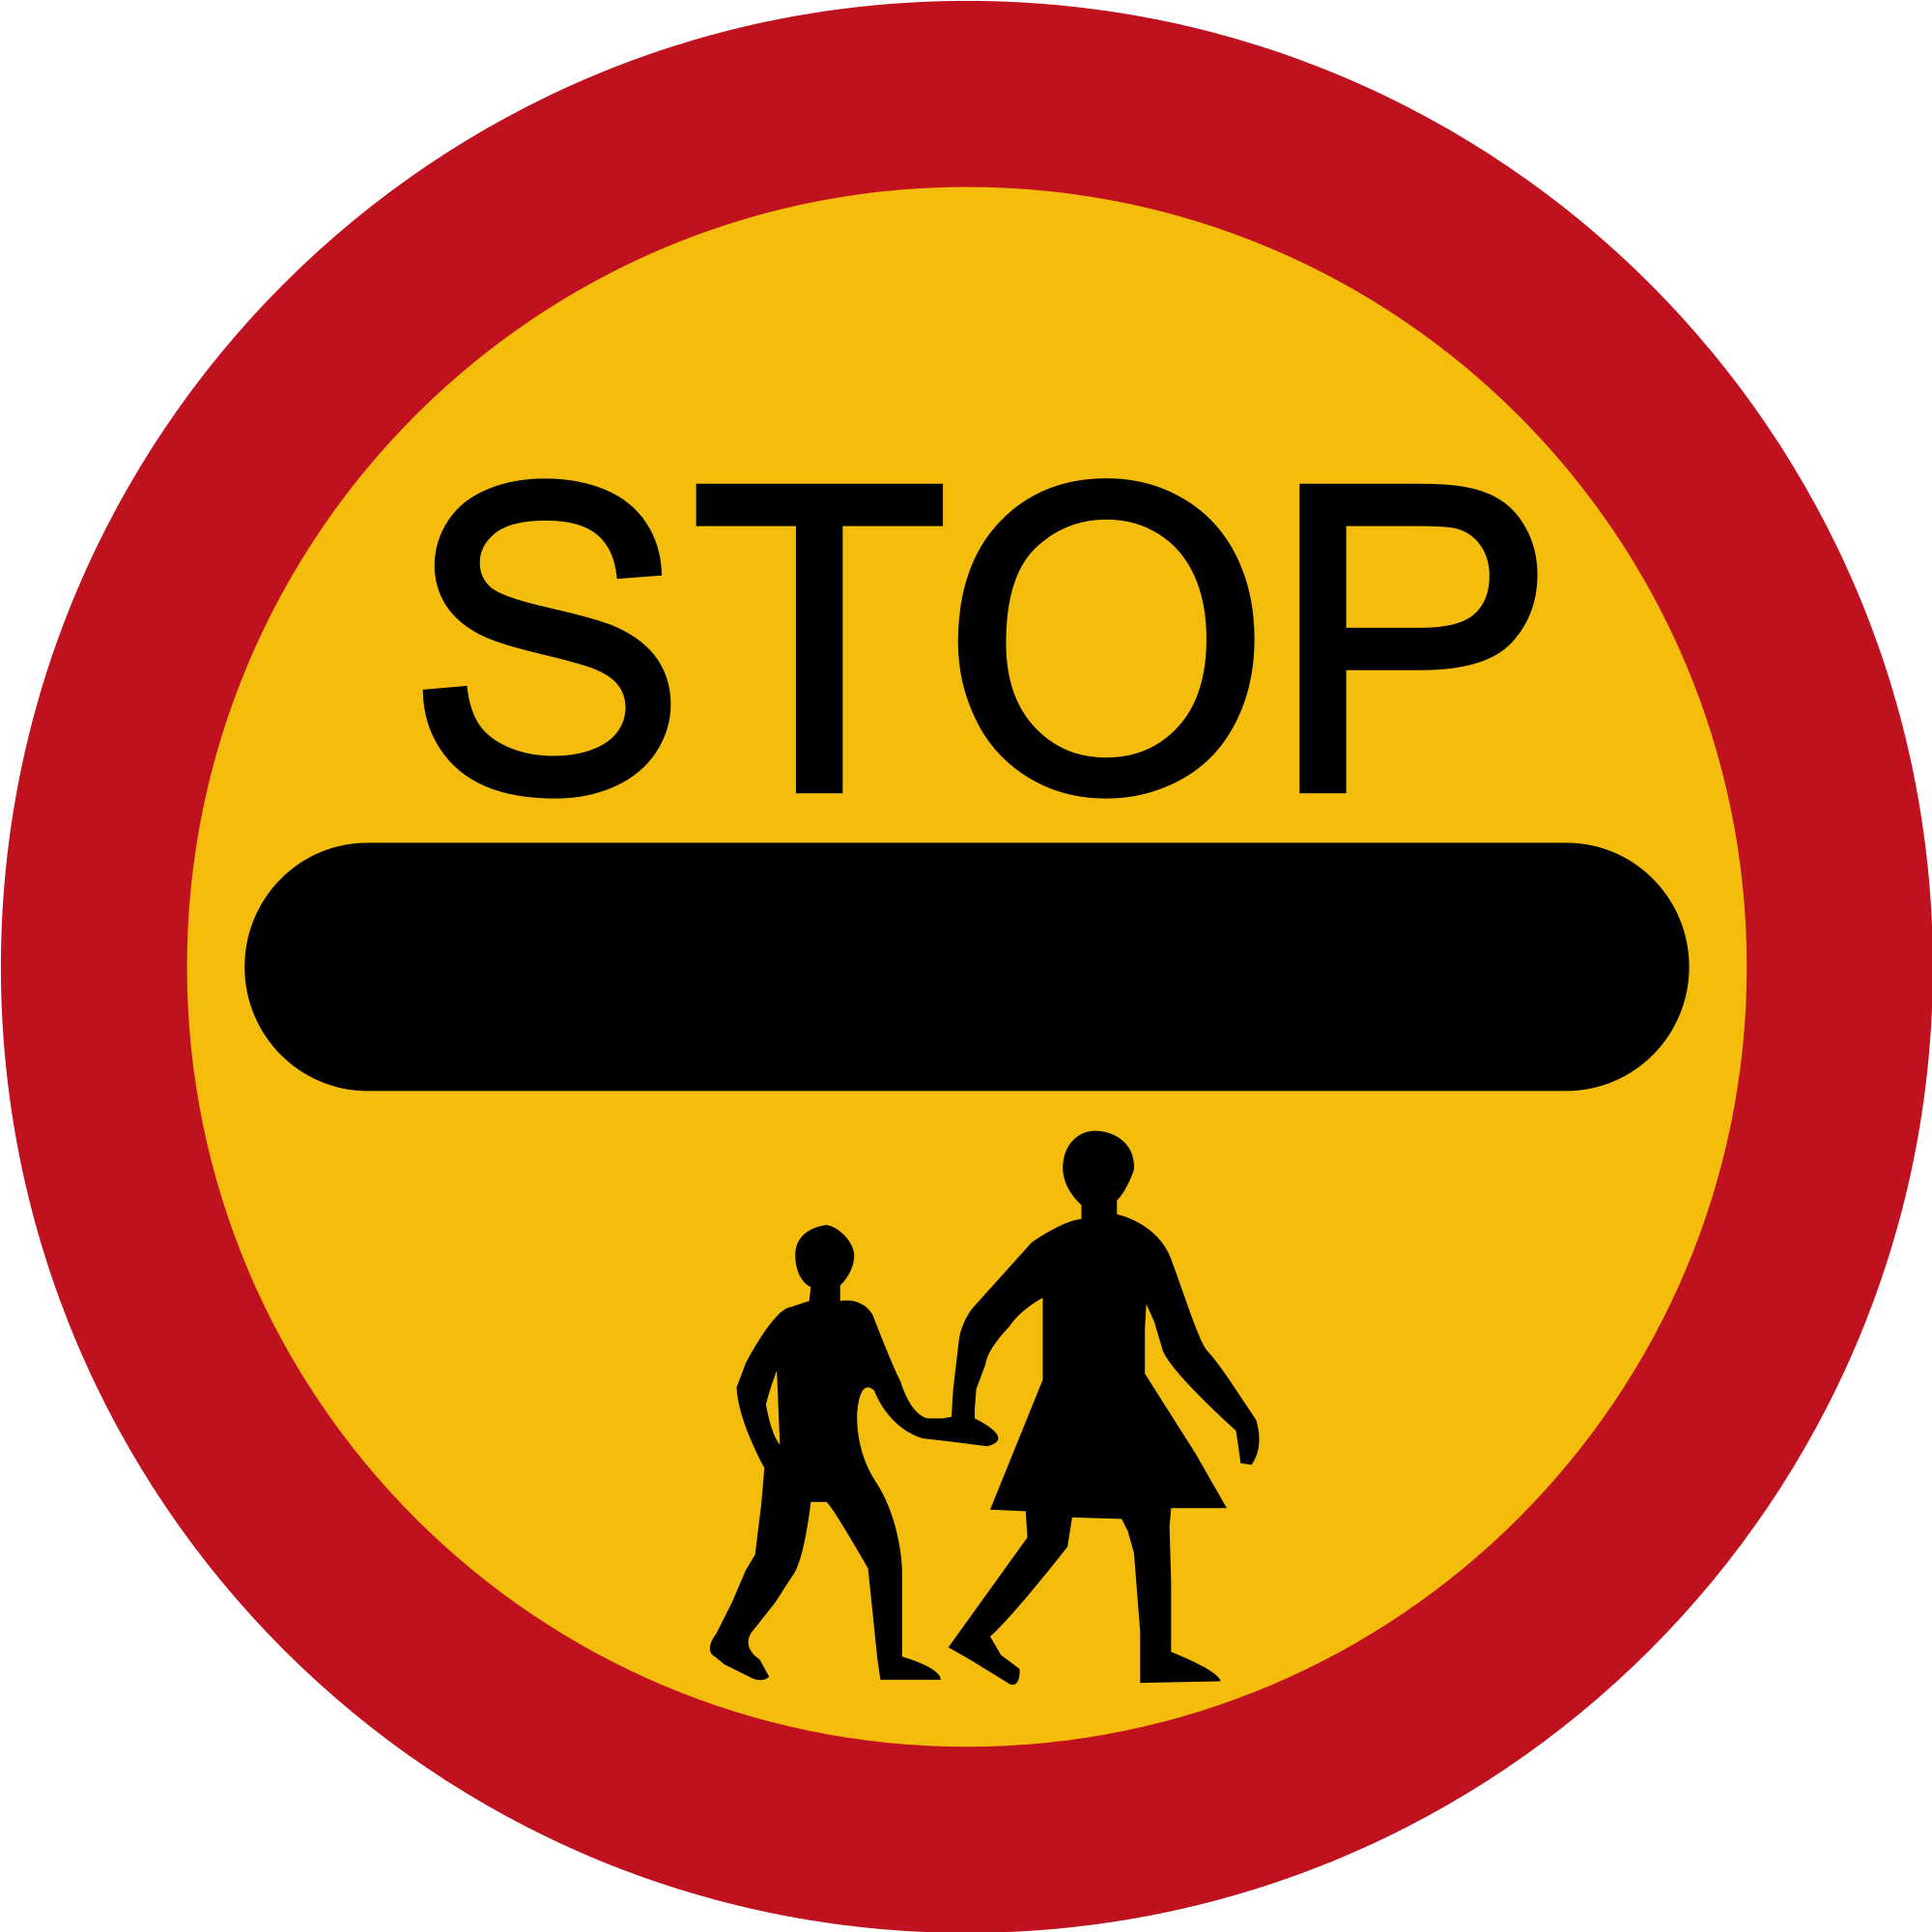 You must stop. Дорожные знаки. Знак «стоп». Знак «дети». Знак стоп для пешеходов.